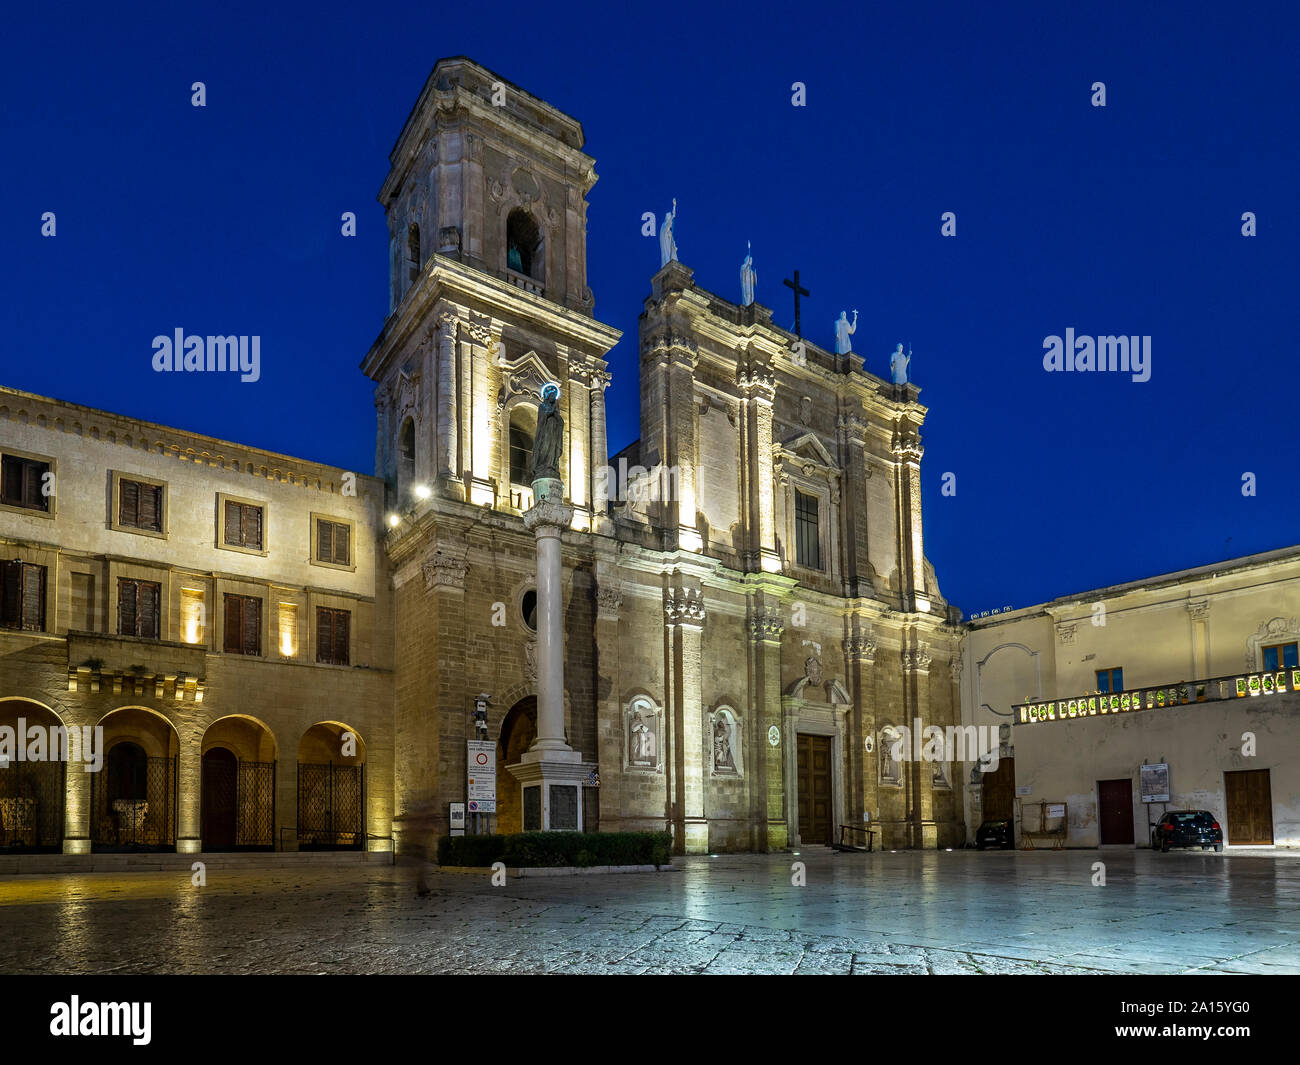 La facciata della cattedrale illuminata a Brindisi contro il cielo blu e chiaro di notte Foto Stock